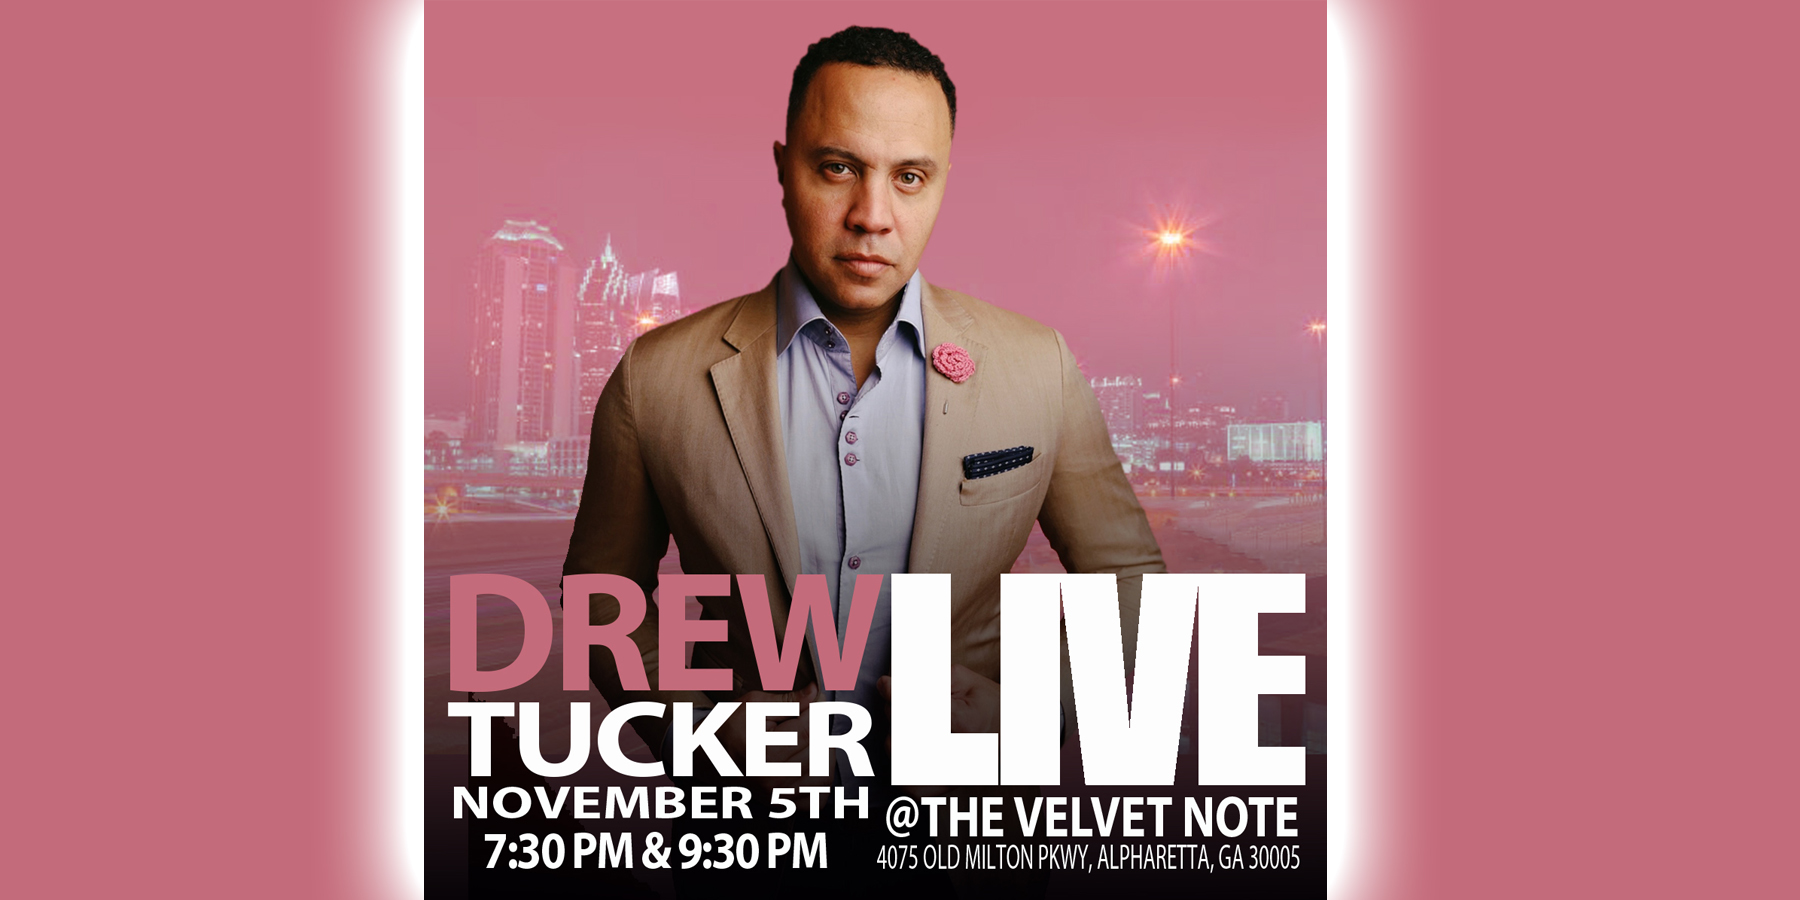 Drew Tucker Live At The Velvet Note, November 5th